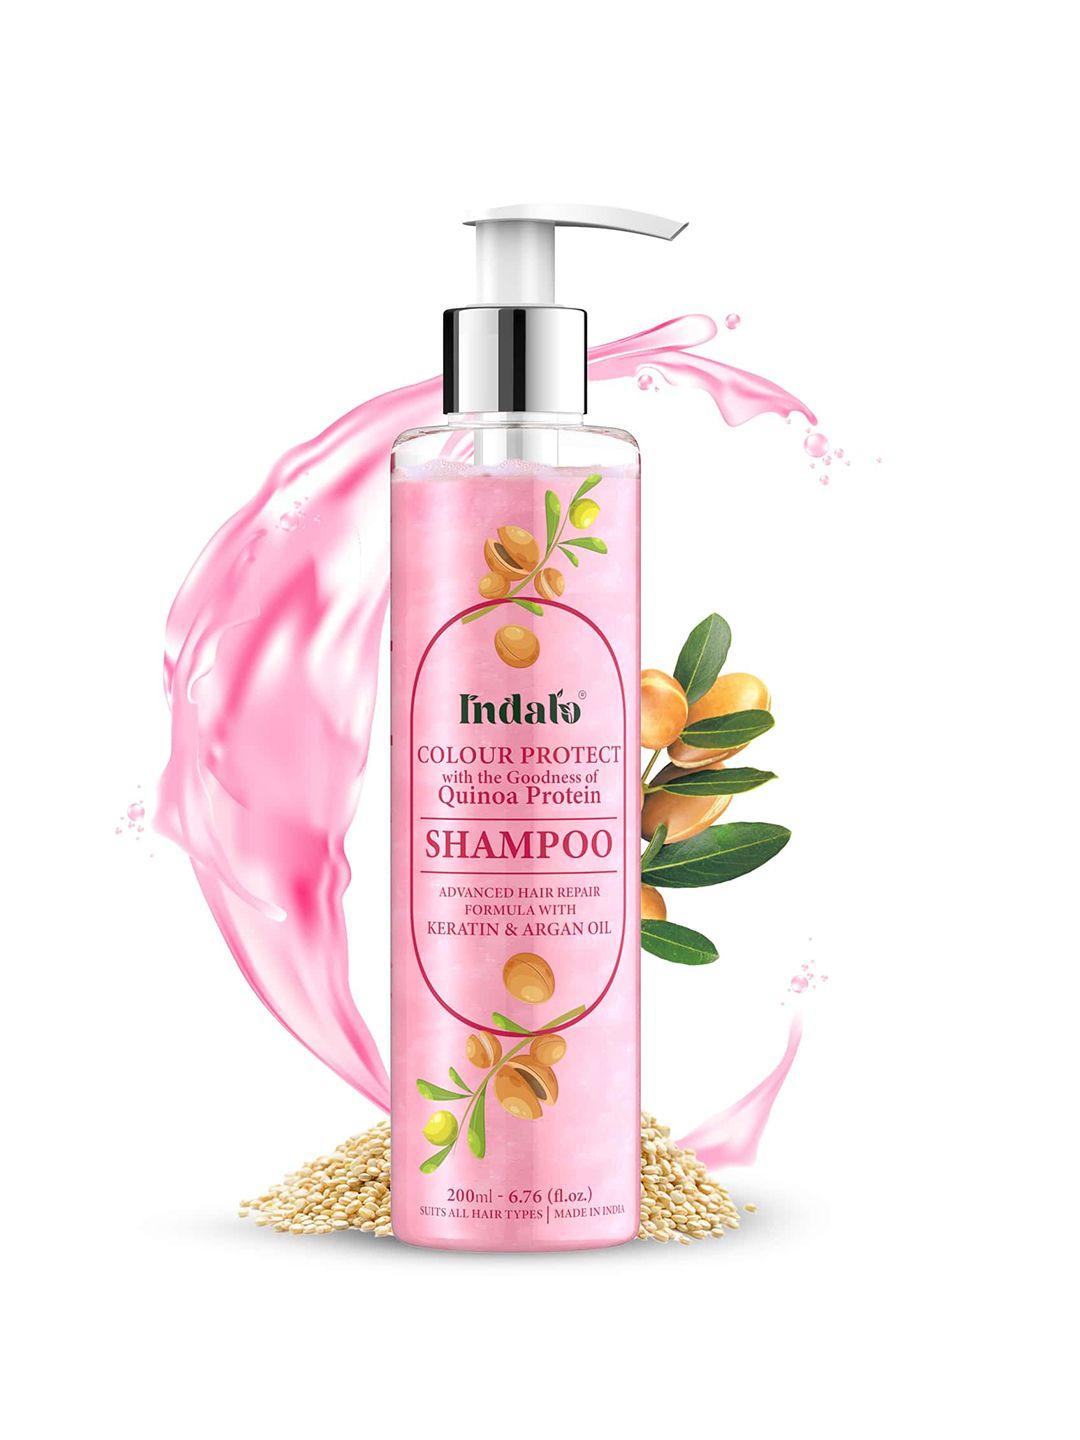 indalo quinoa protein hair colour protect shampoo for hair & damaged hair repair-200 ml